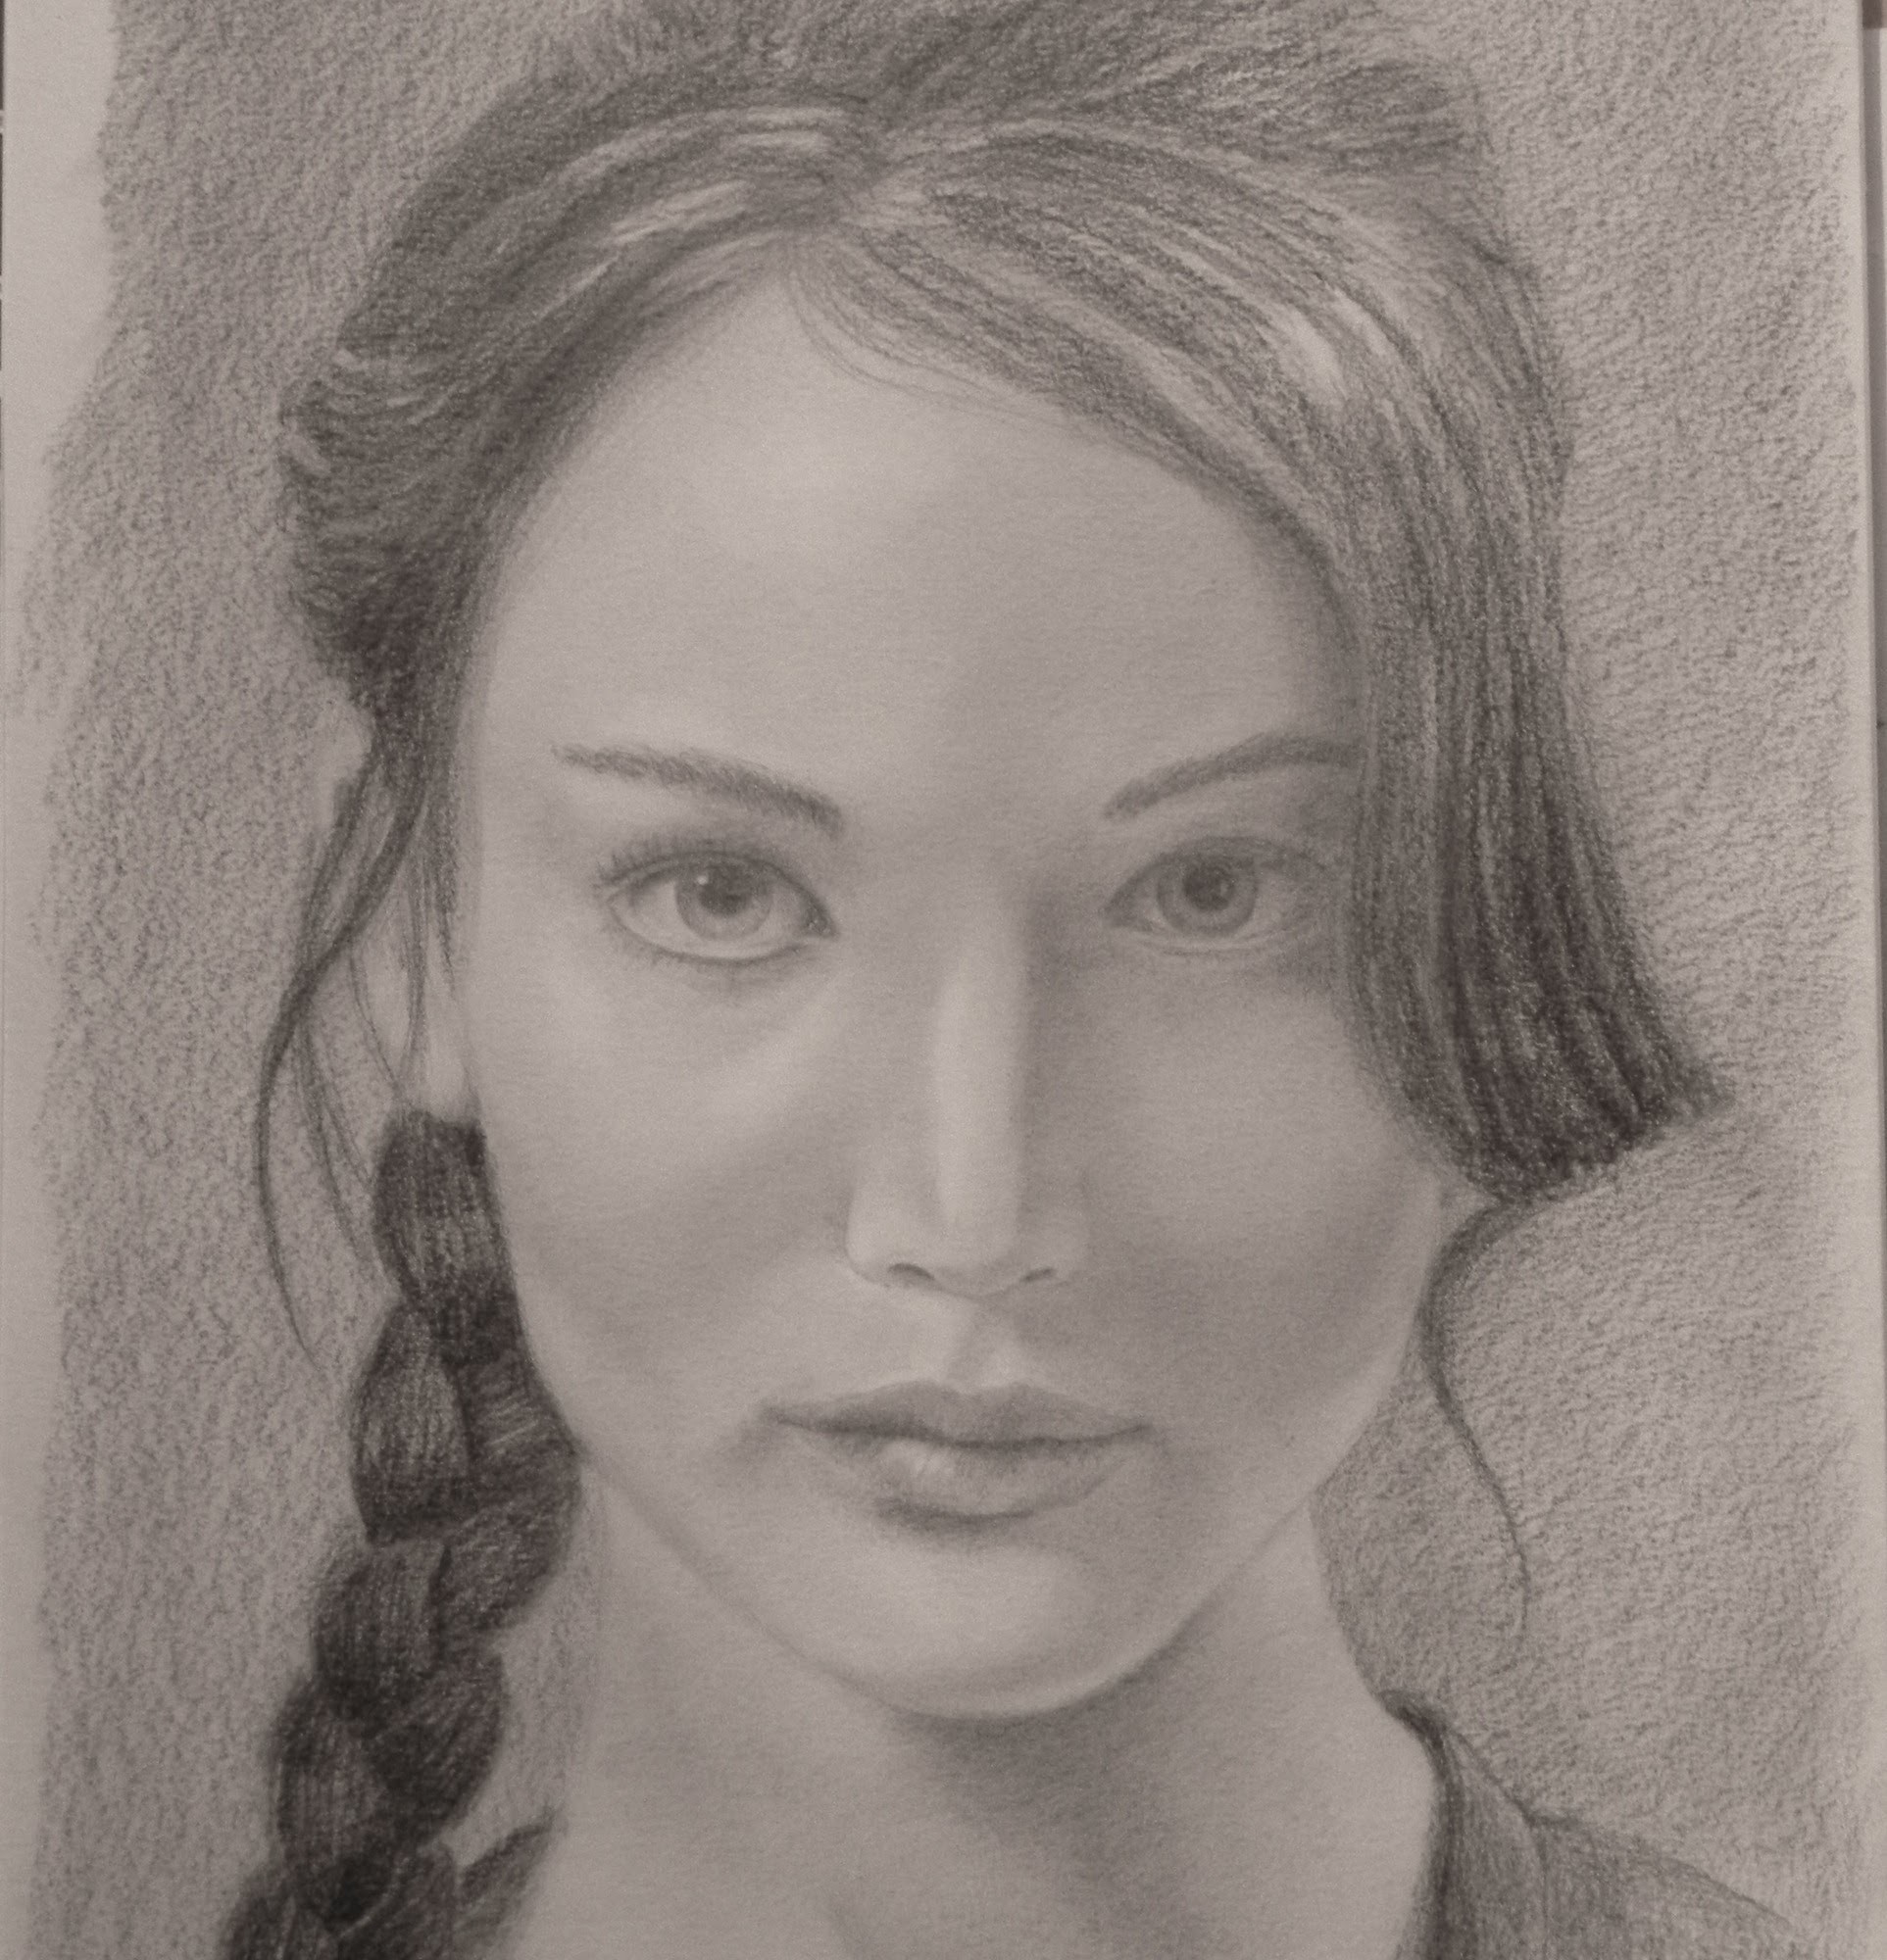 Cómo hacer un retrato: Jennifer Lawrence  (Juegos del Hambre)- Arte Divierte.